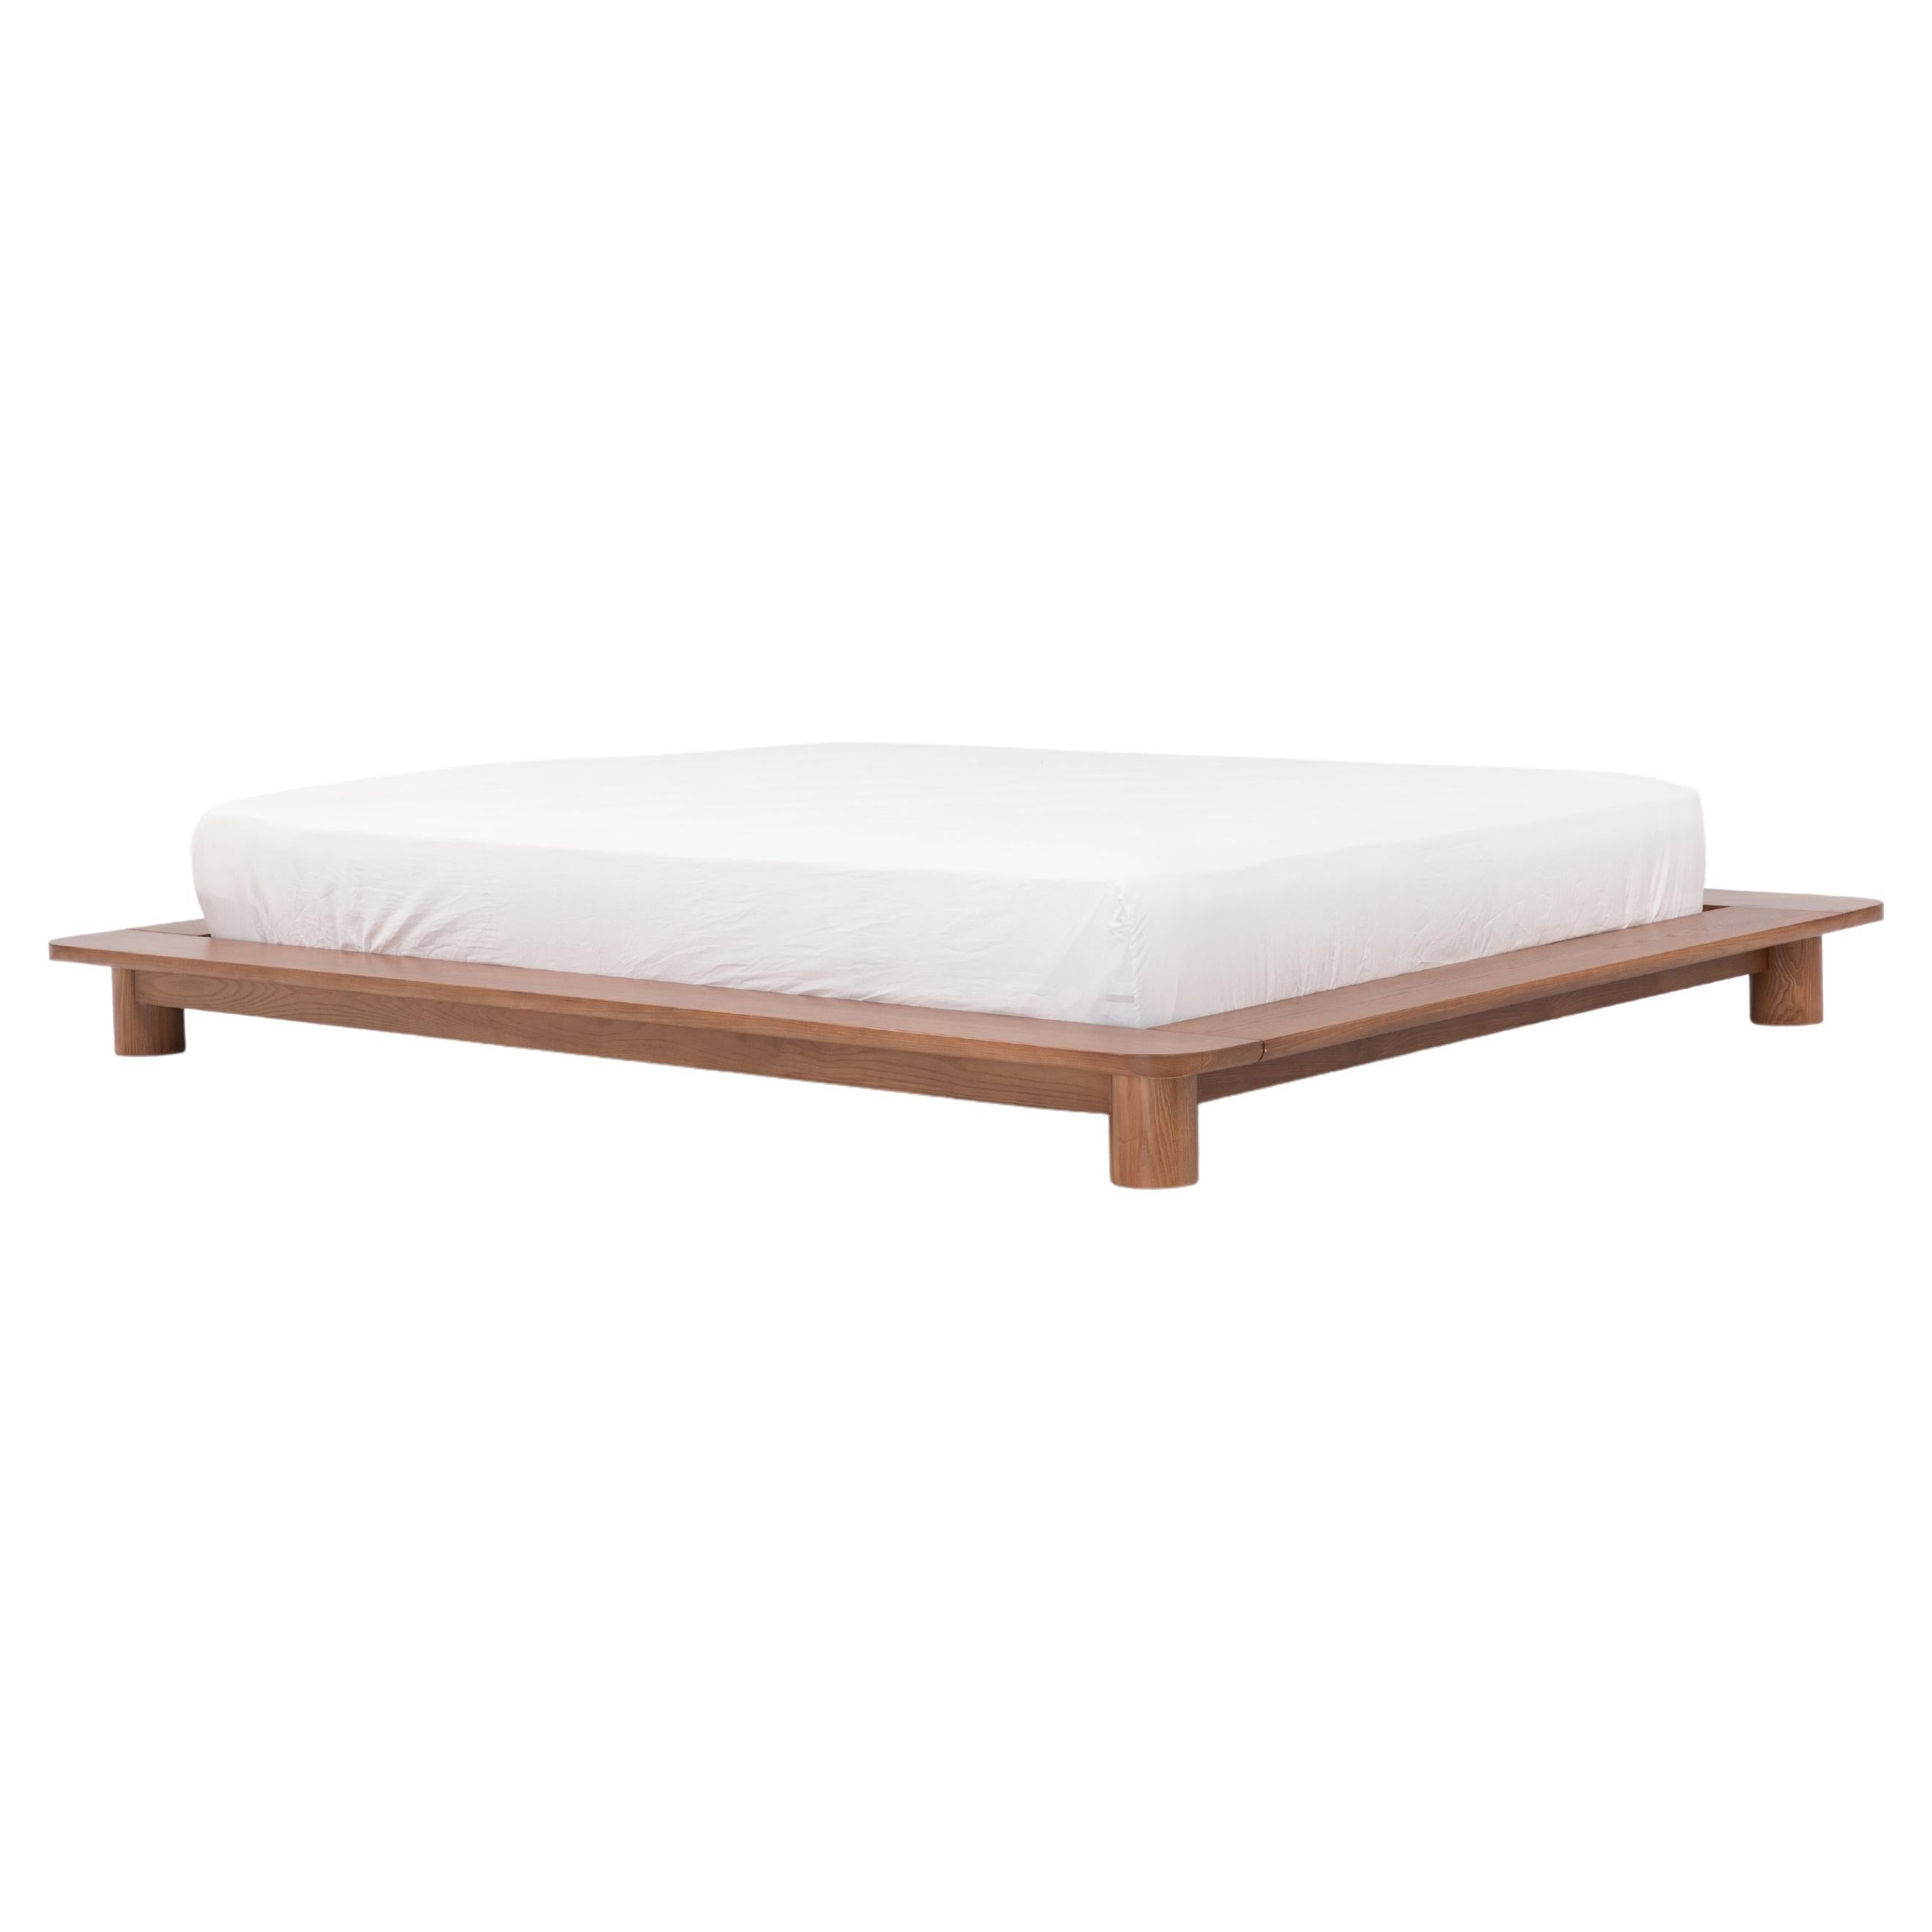 Kiral Plateaubett von Sun at Six, minimalistisches Siena Queen-Bett aus Holz